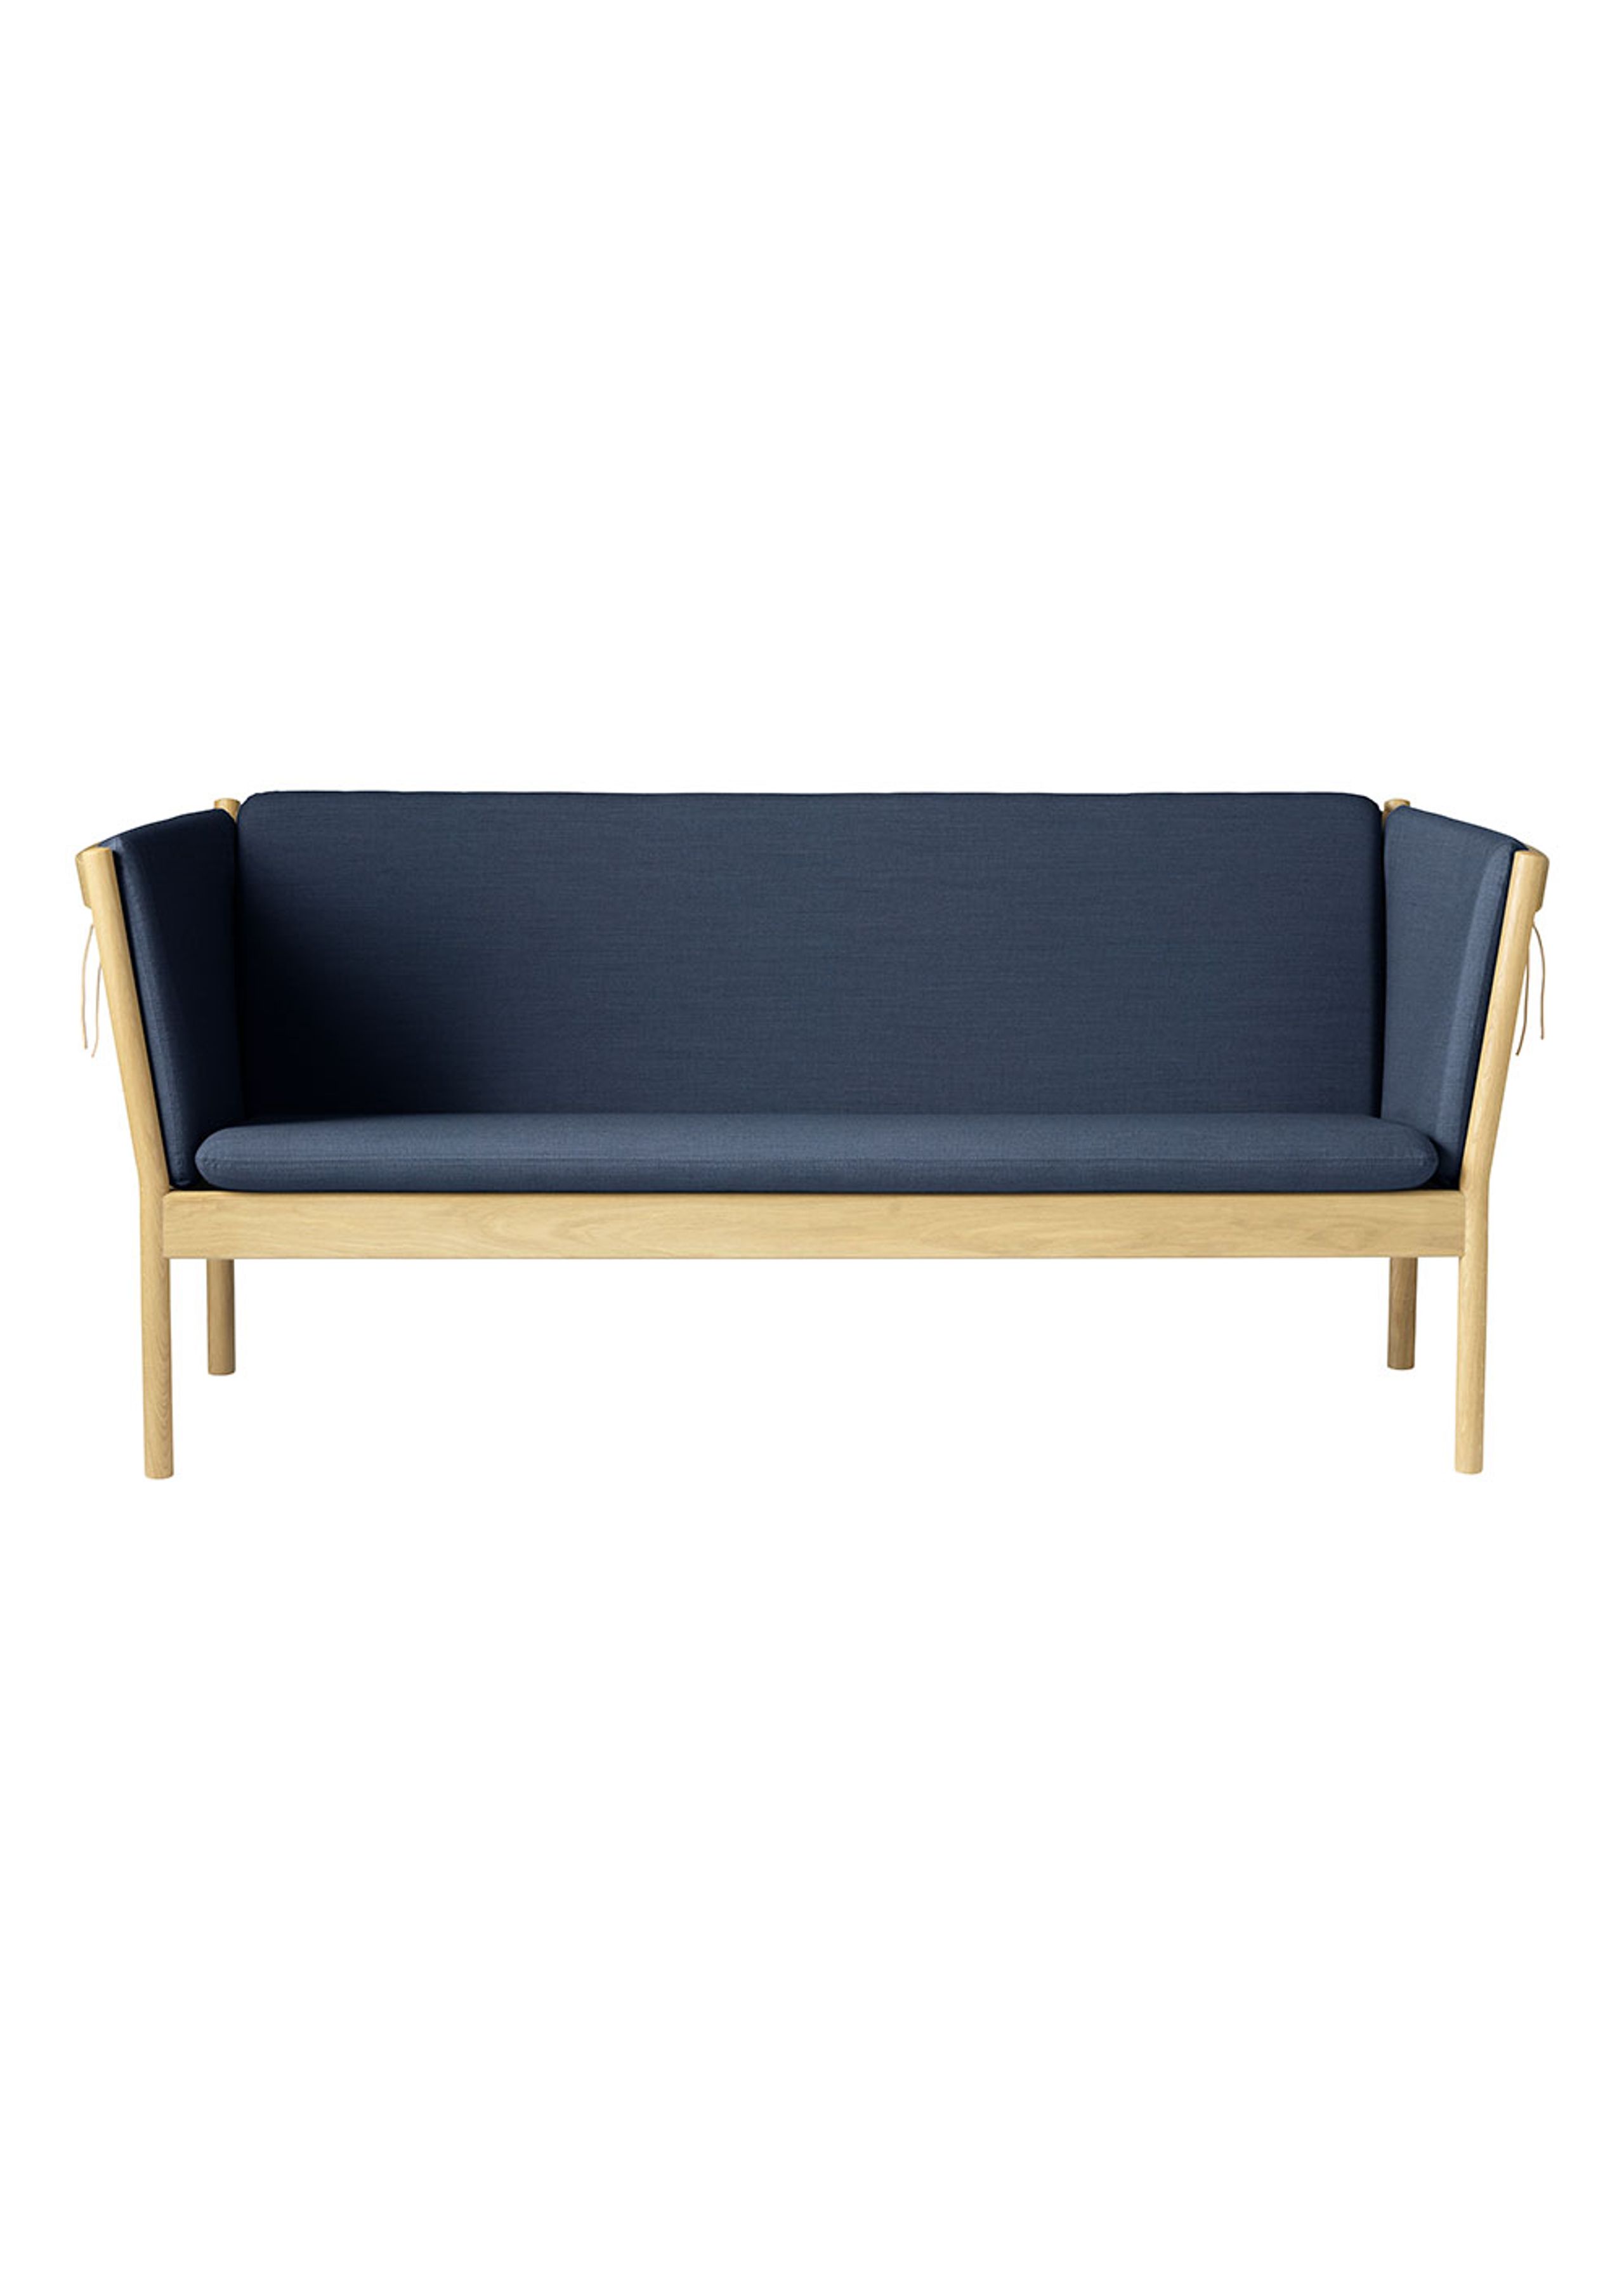 FDB Møbler / Furniture - Sofa - J149 3 pers by Erik Ole Jørgensen - Eg, Natur, Lakeret / Uld, Mørkeblå